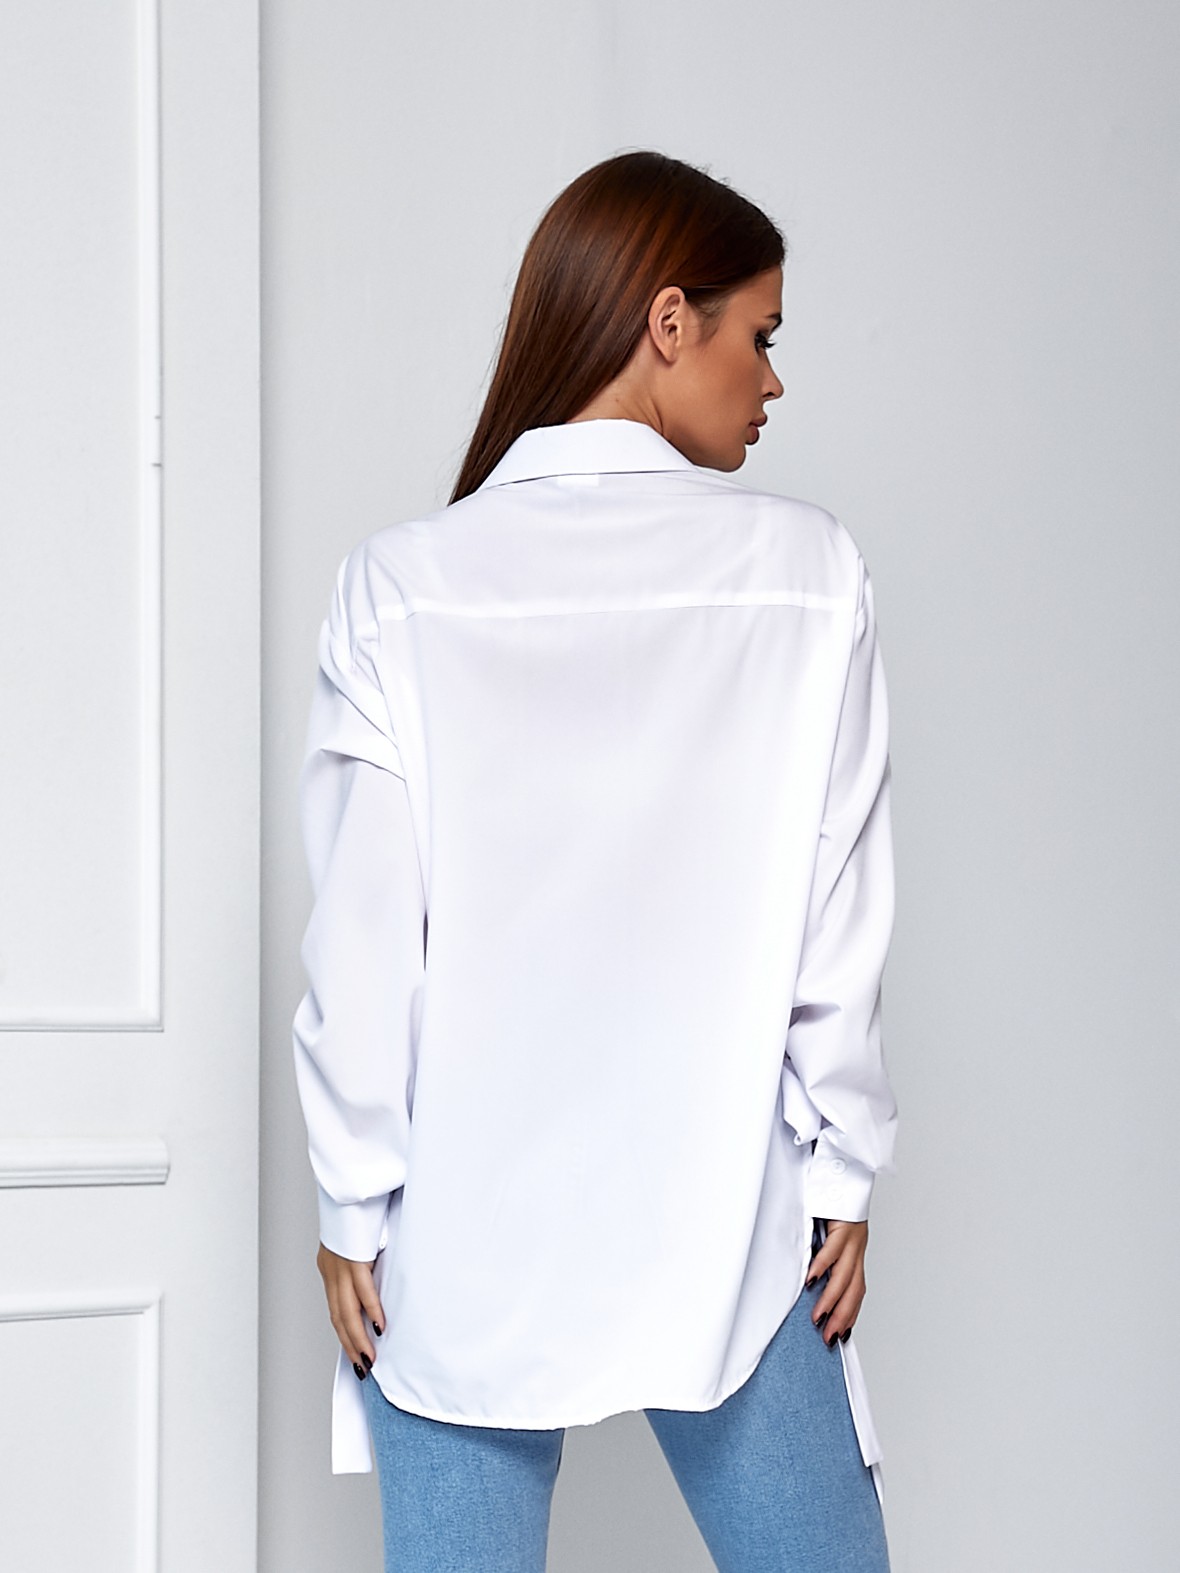 Рубашка женская удлиненная белая 02714 в интернет-магазине